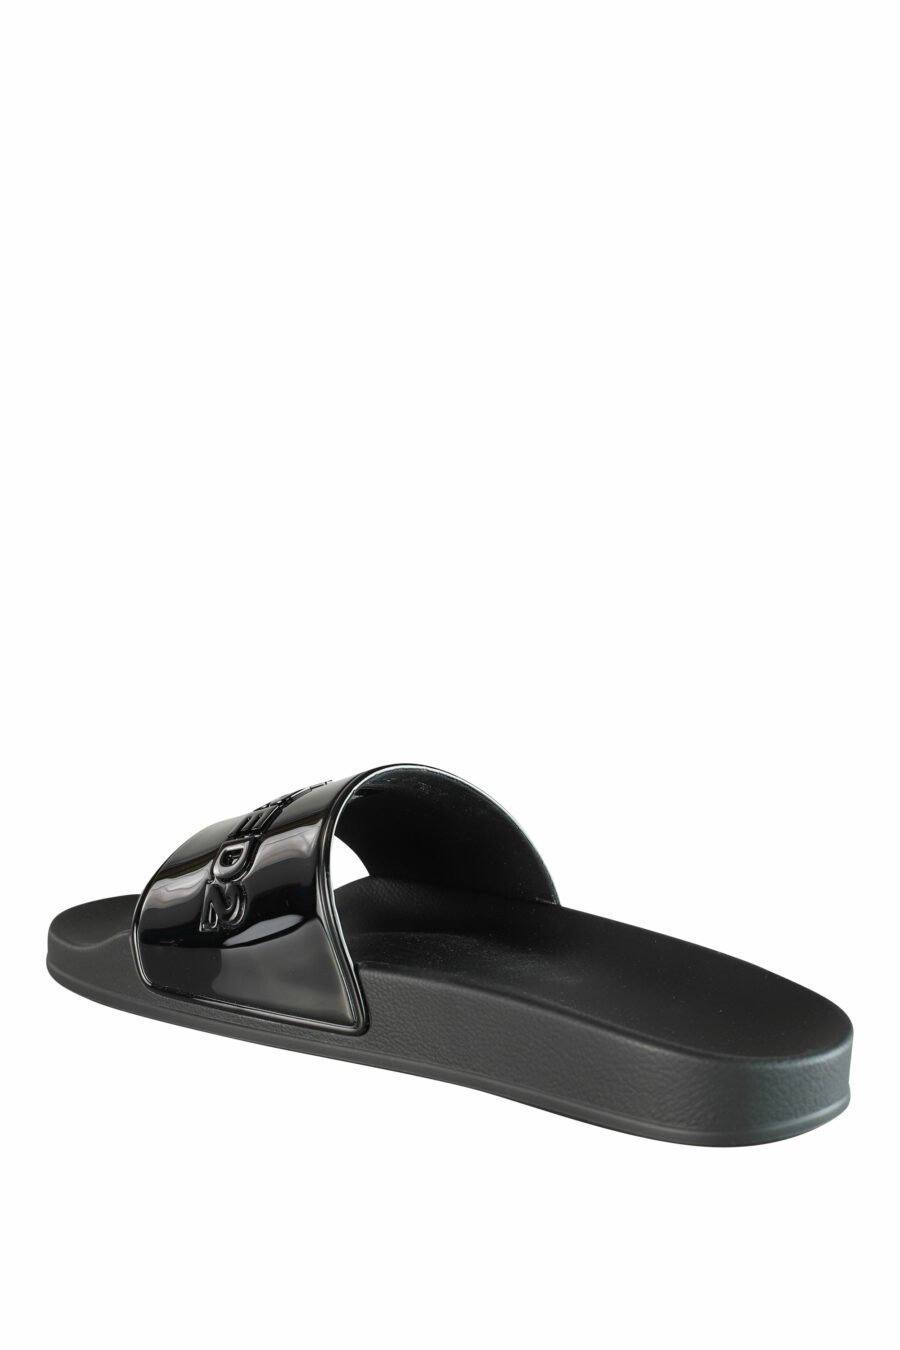 Shiny black flip flops with black maxilogo - IMG 1338